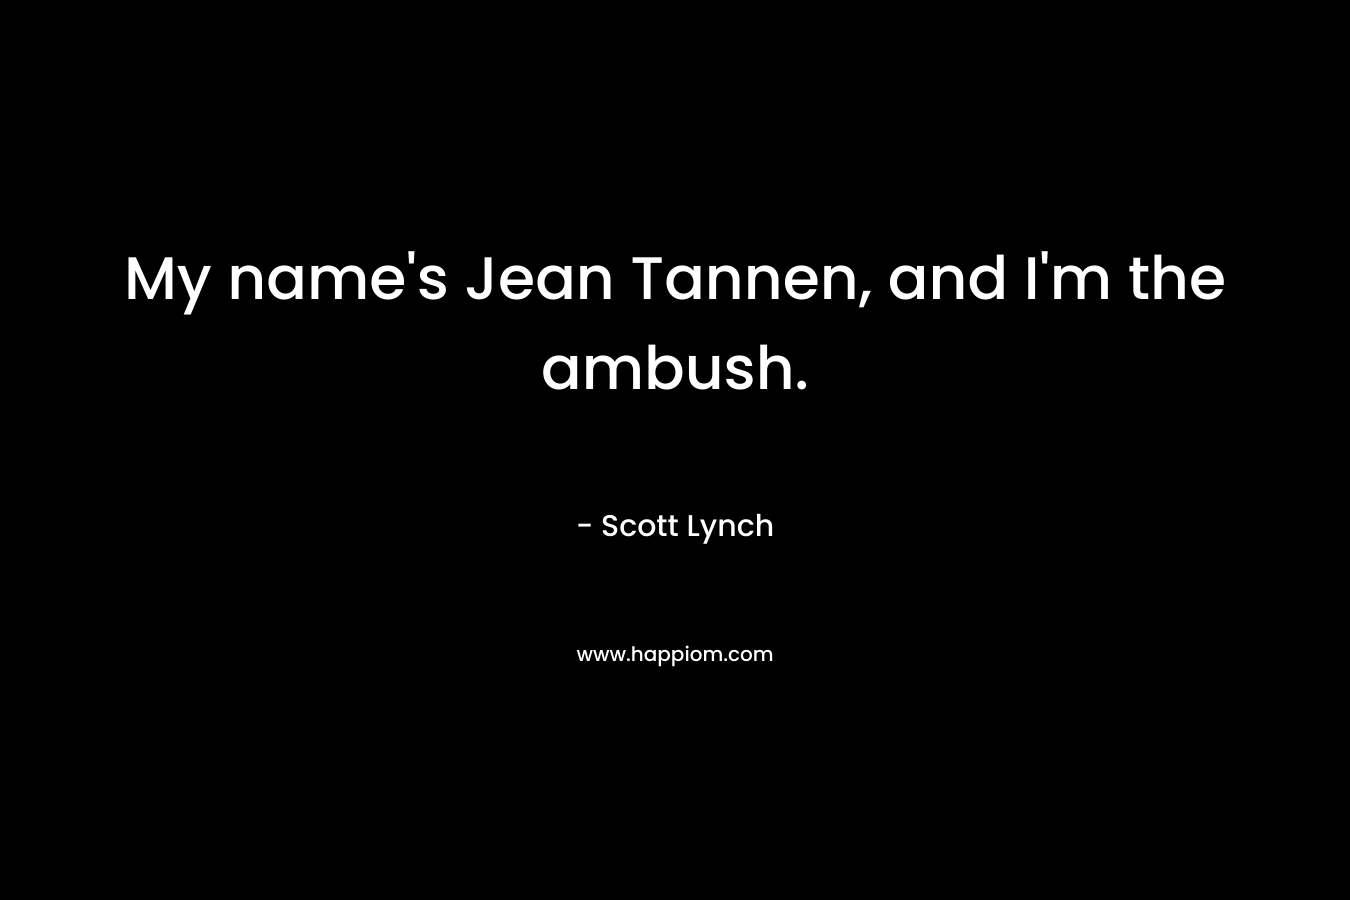 My name's Jean Tannen, and I'm the ambush.